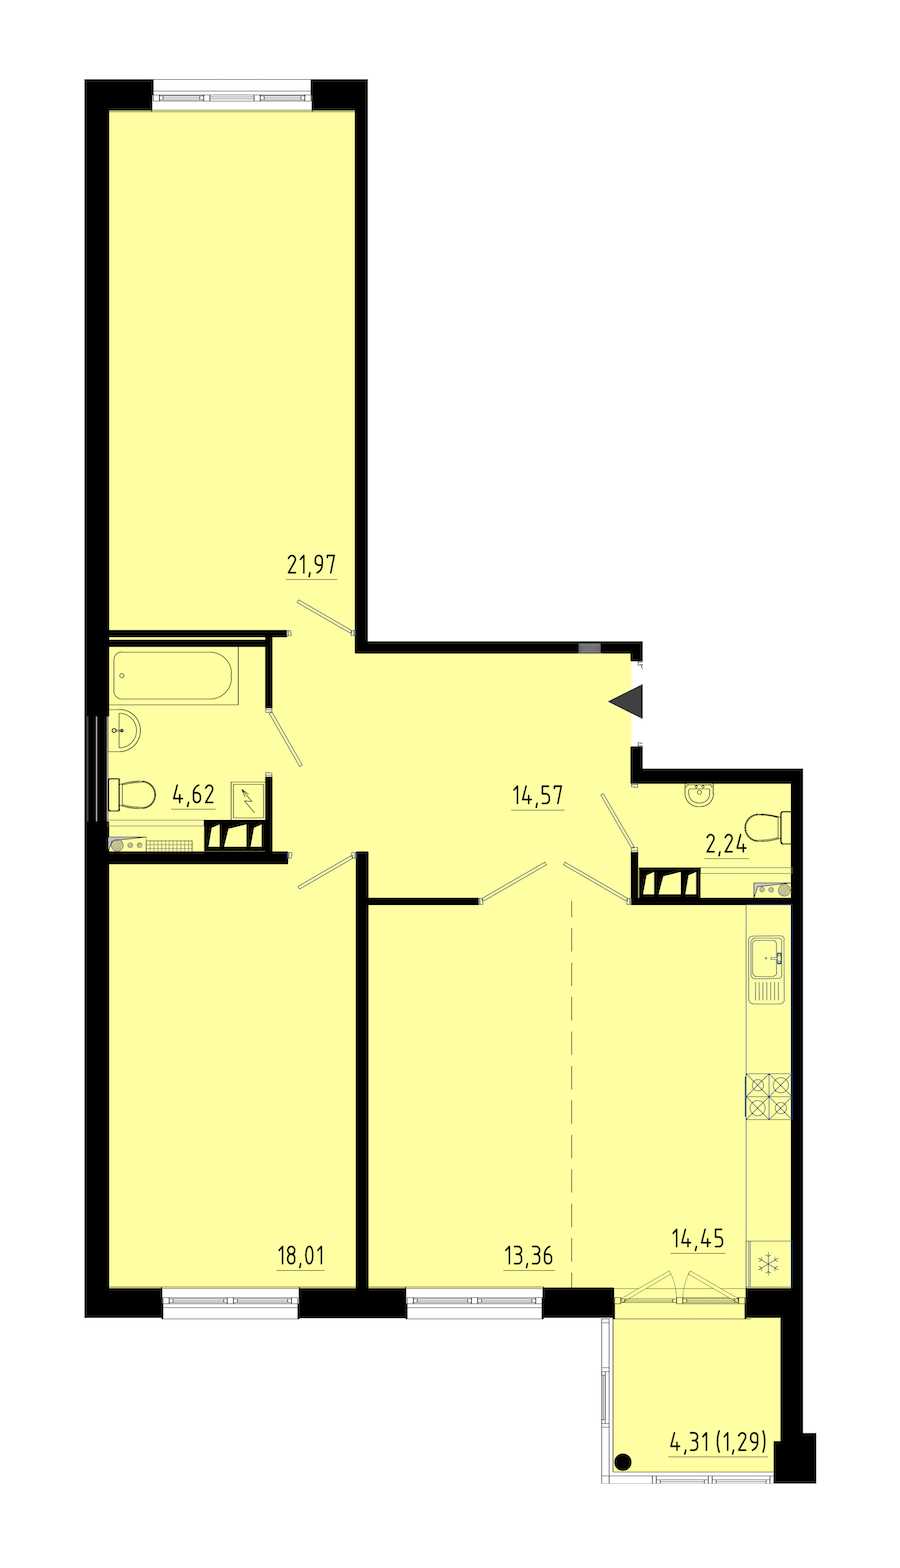 Двухкомнатная квартира в : площадь 90.5 м2 , этаж: 1 – купить в Санкт-Петербурге